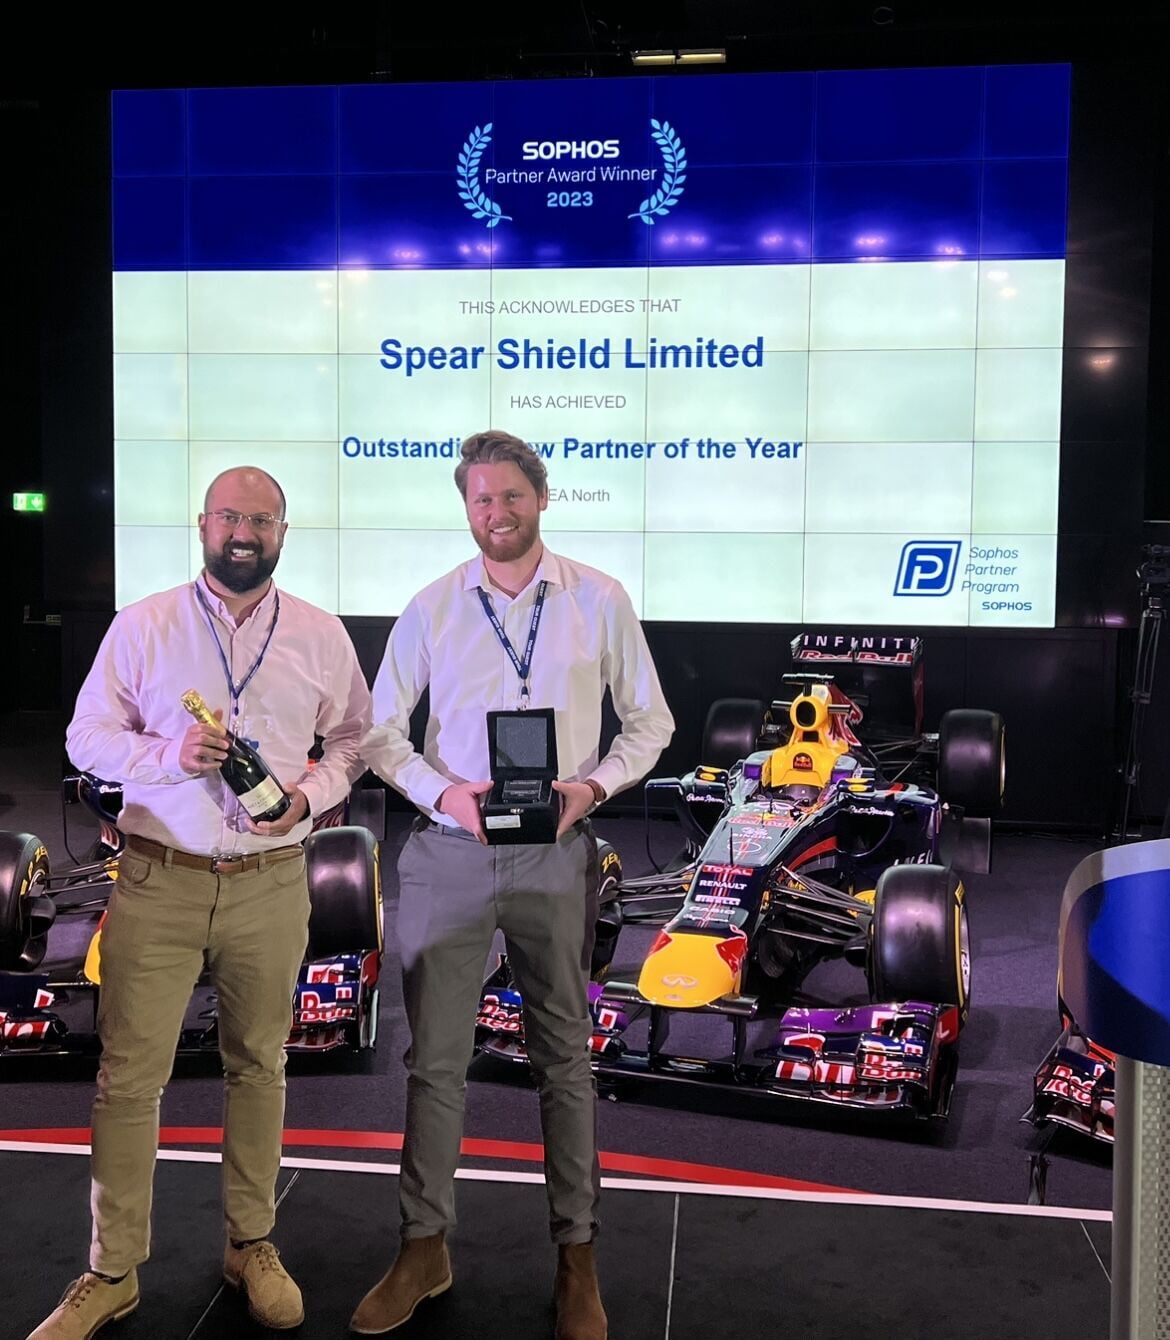 Award winning Sophos cybersecurity partner spear shield receiving award